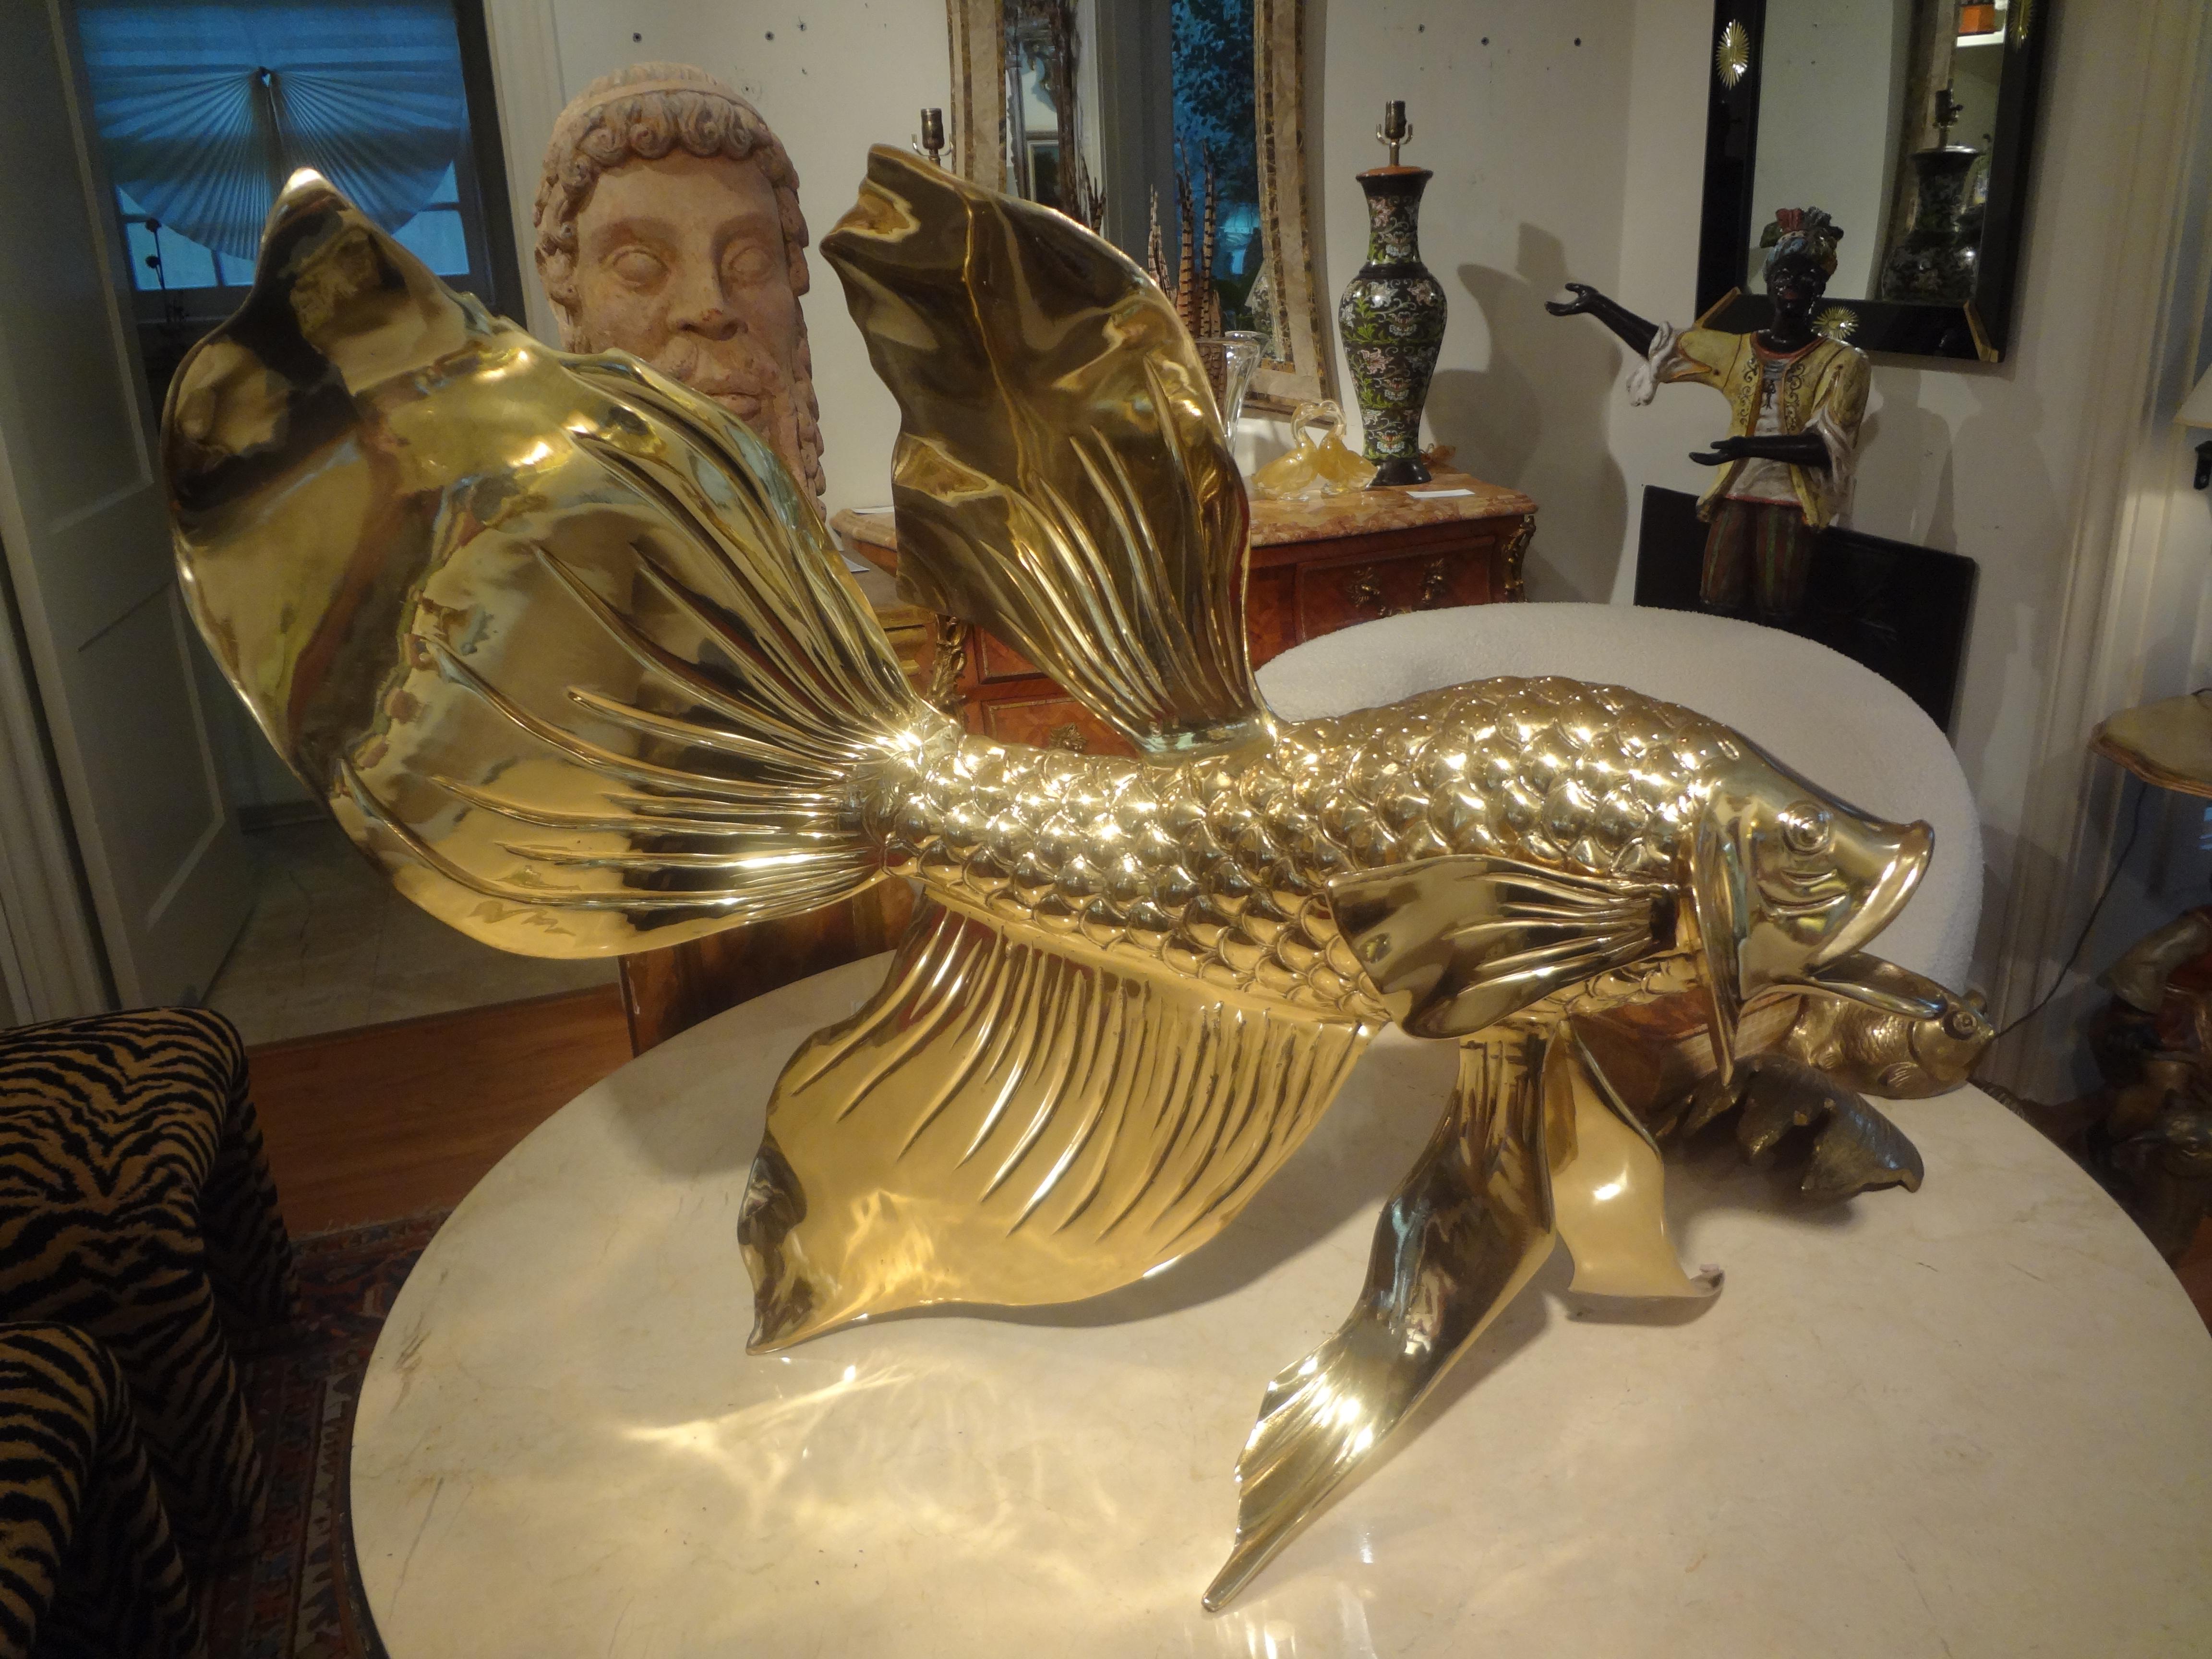 Monumentale sculpture italienne de poisson en laiton. Cette magnifique sculpture de poisson bien détaillée est lourde et a été récemment polie par des professionnels. 
Une sculpture parfaite pour une table basse, une table à manger ou une table